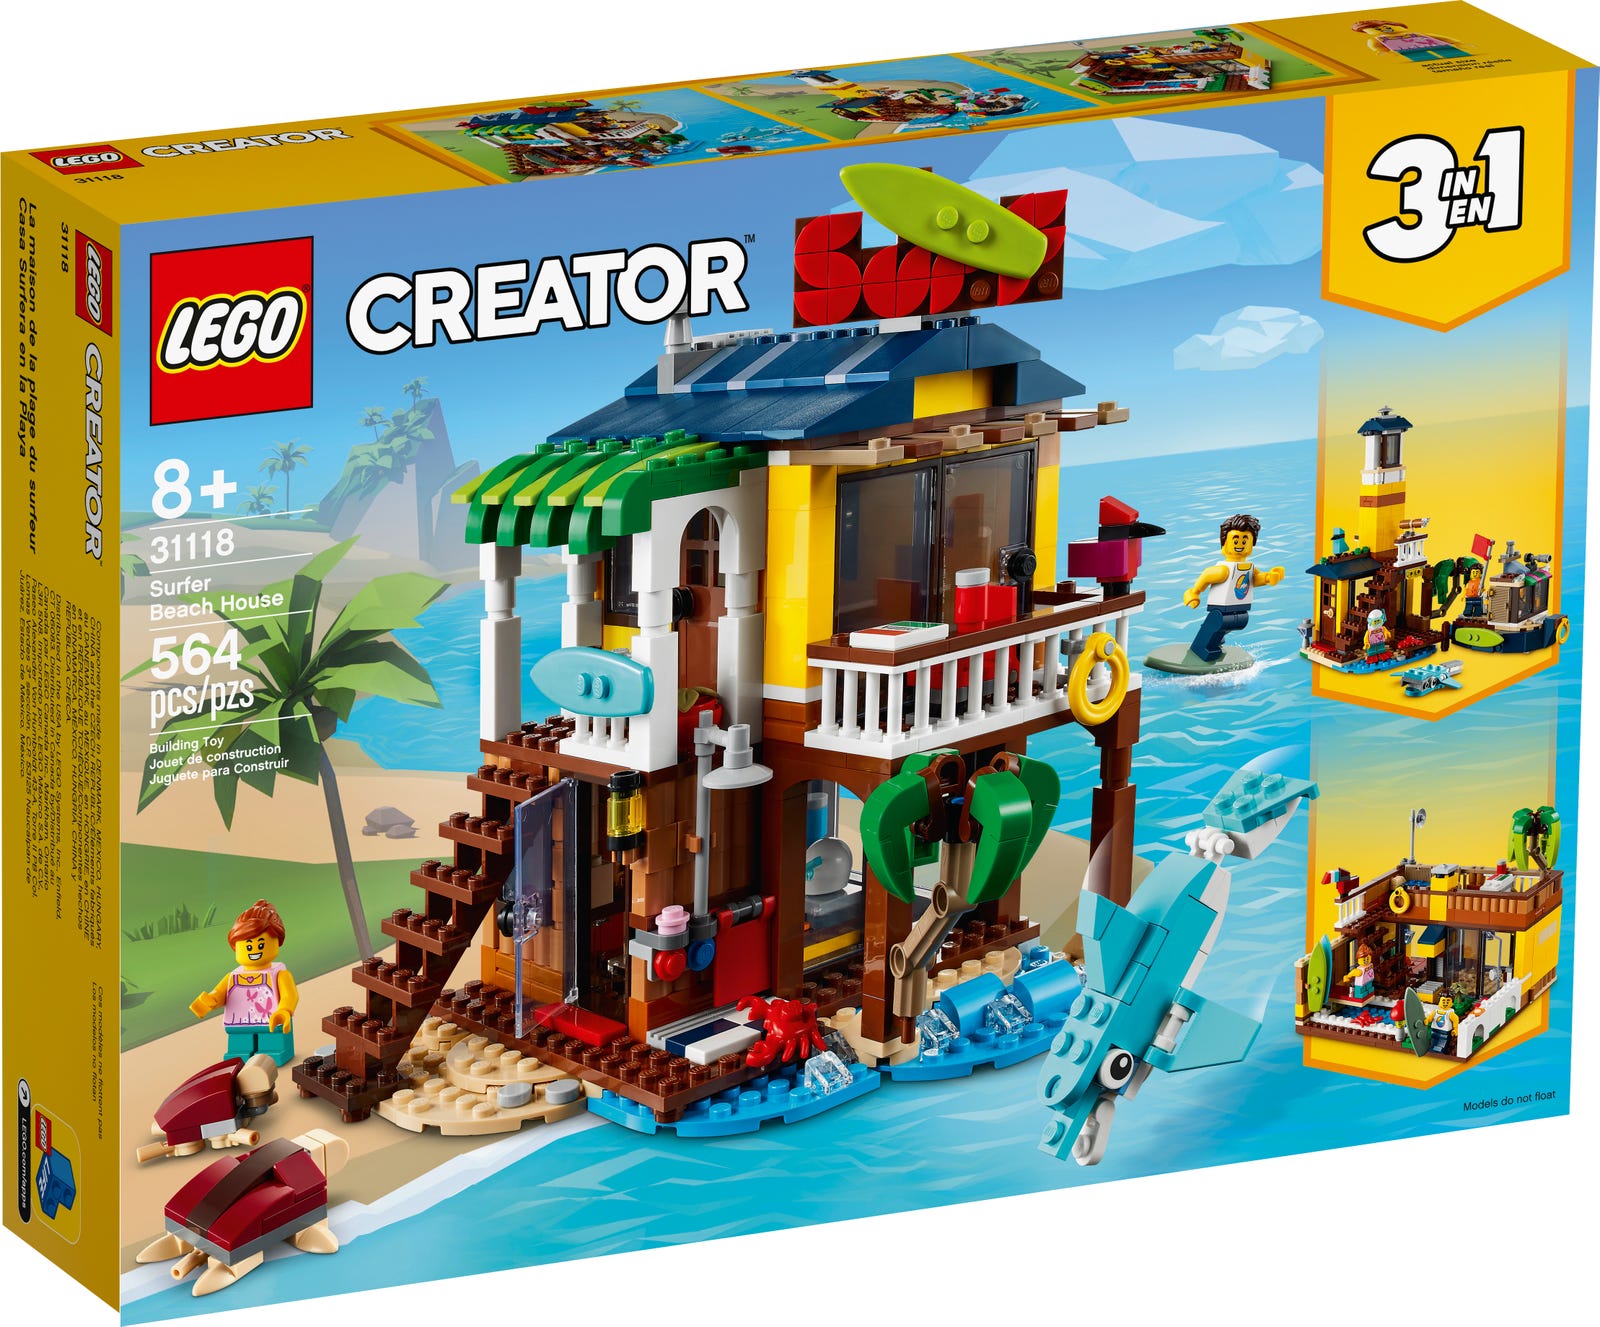 LEGO CREATOR SURFER BEACH HOUSE 31118